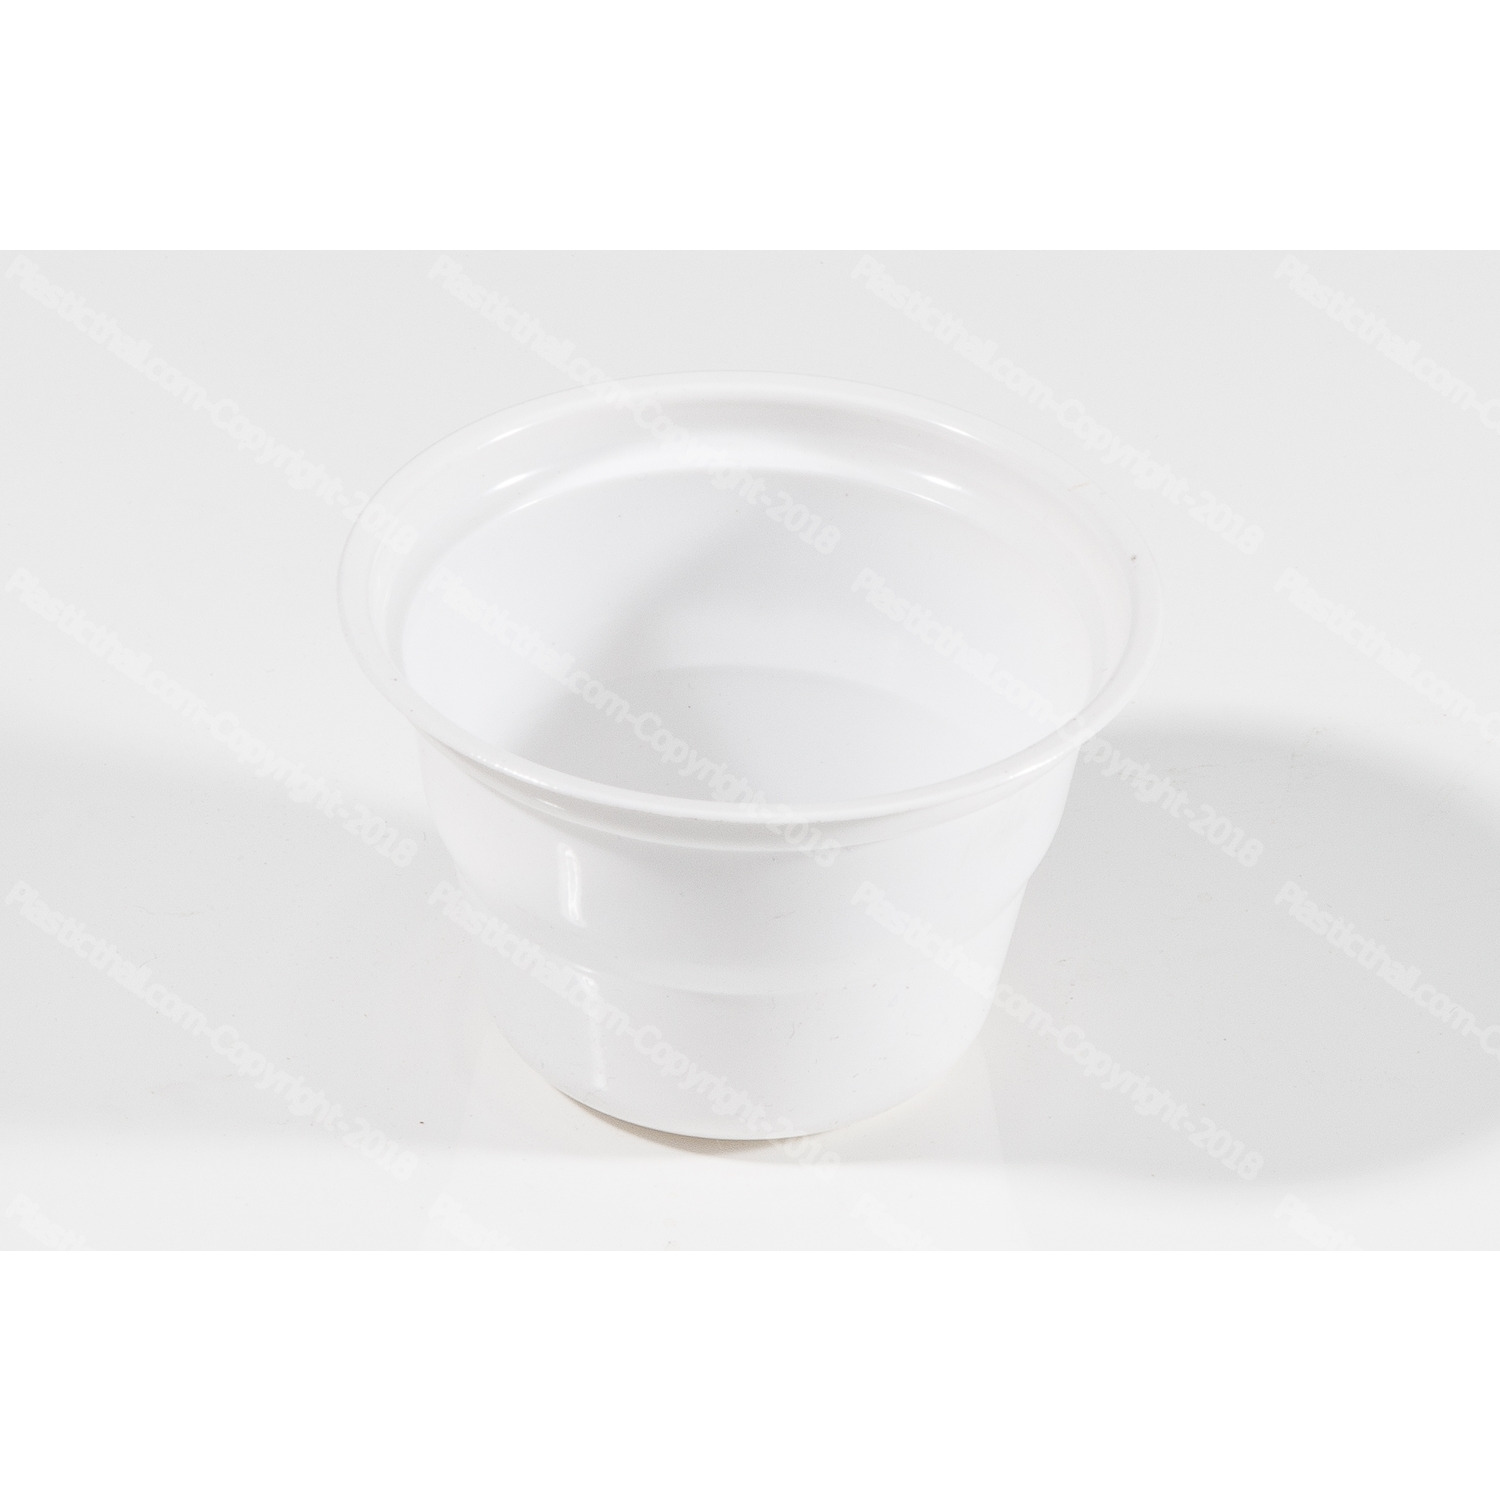 White Plastic Bowls or Katoris